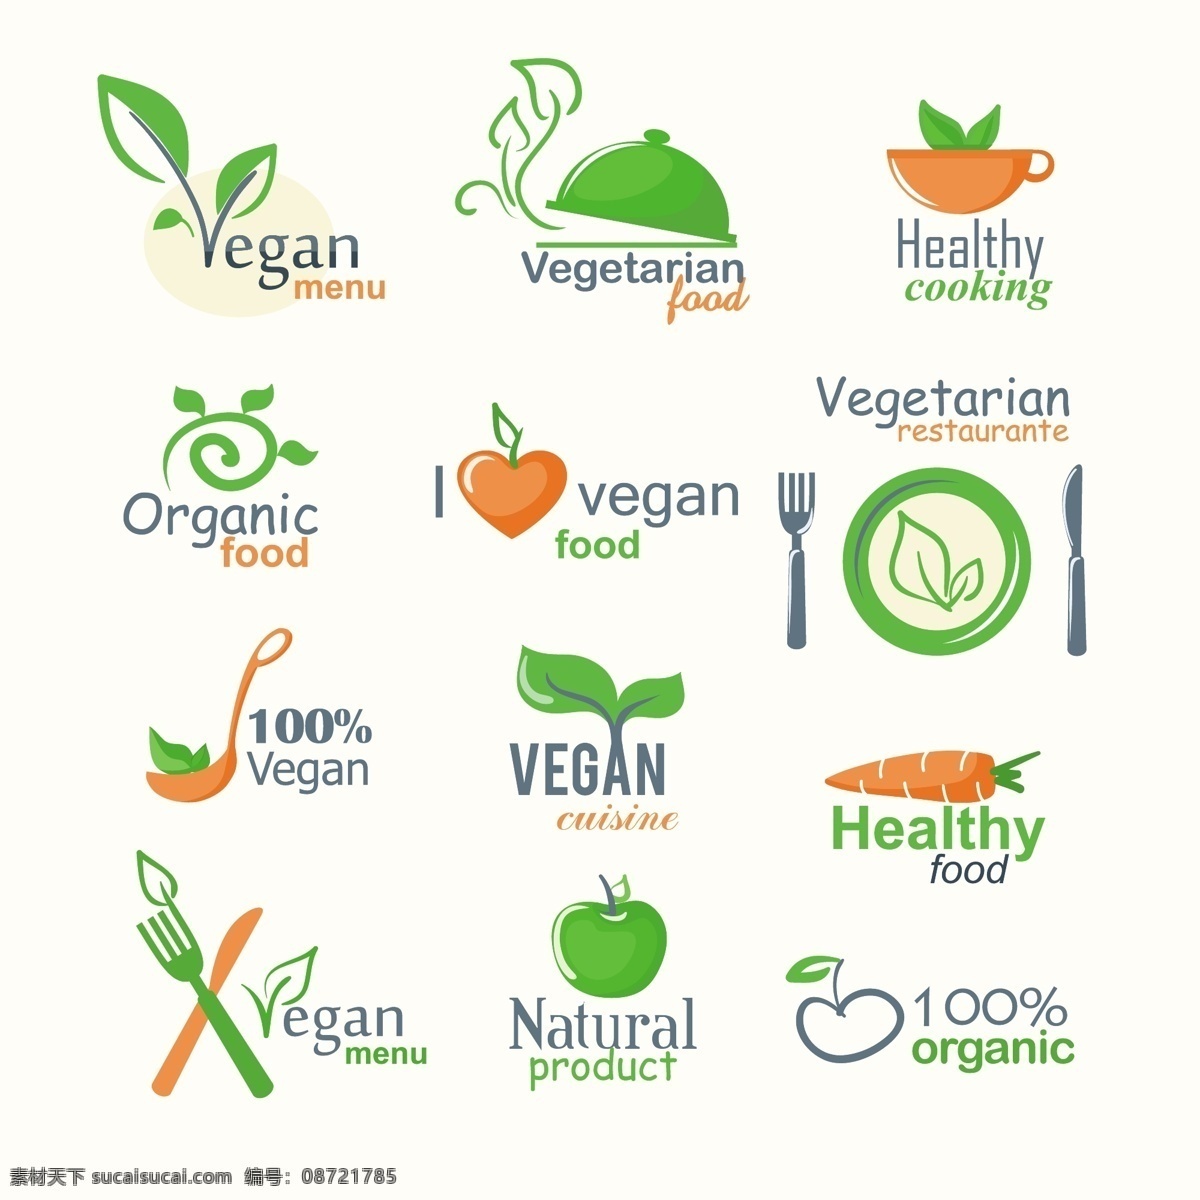 绿色食品 绿色健康 蔬菜 菜单 menu 绿色环保 绿色 环保 绿色标签 食品标签 矢量 图标 标志 标签 logo 小图标 标识标志图标